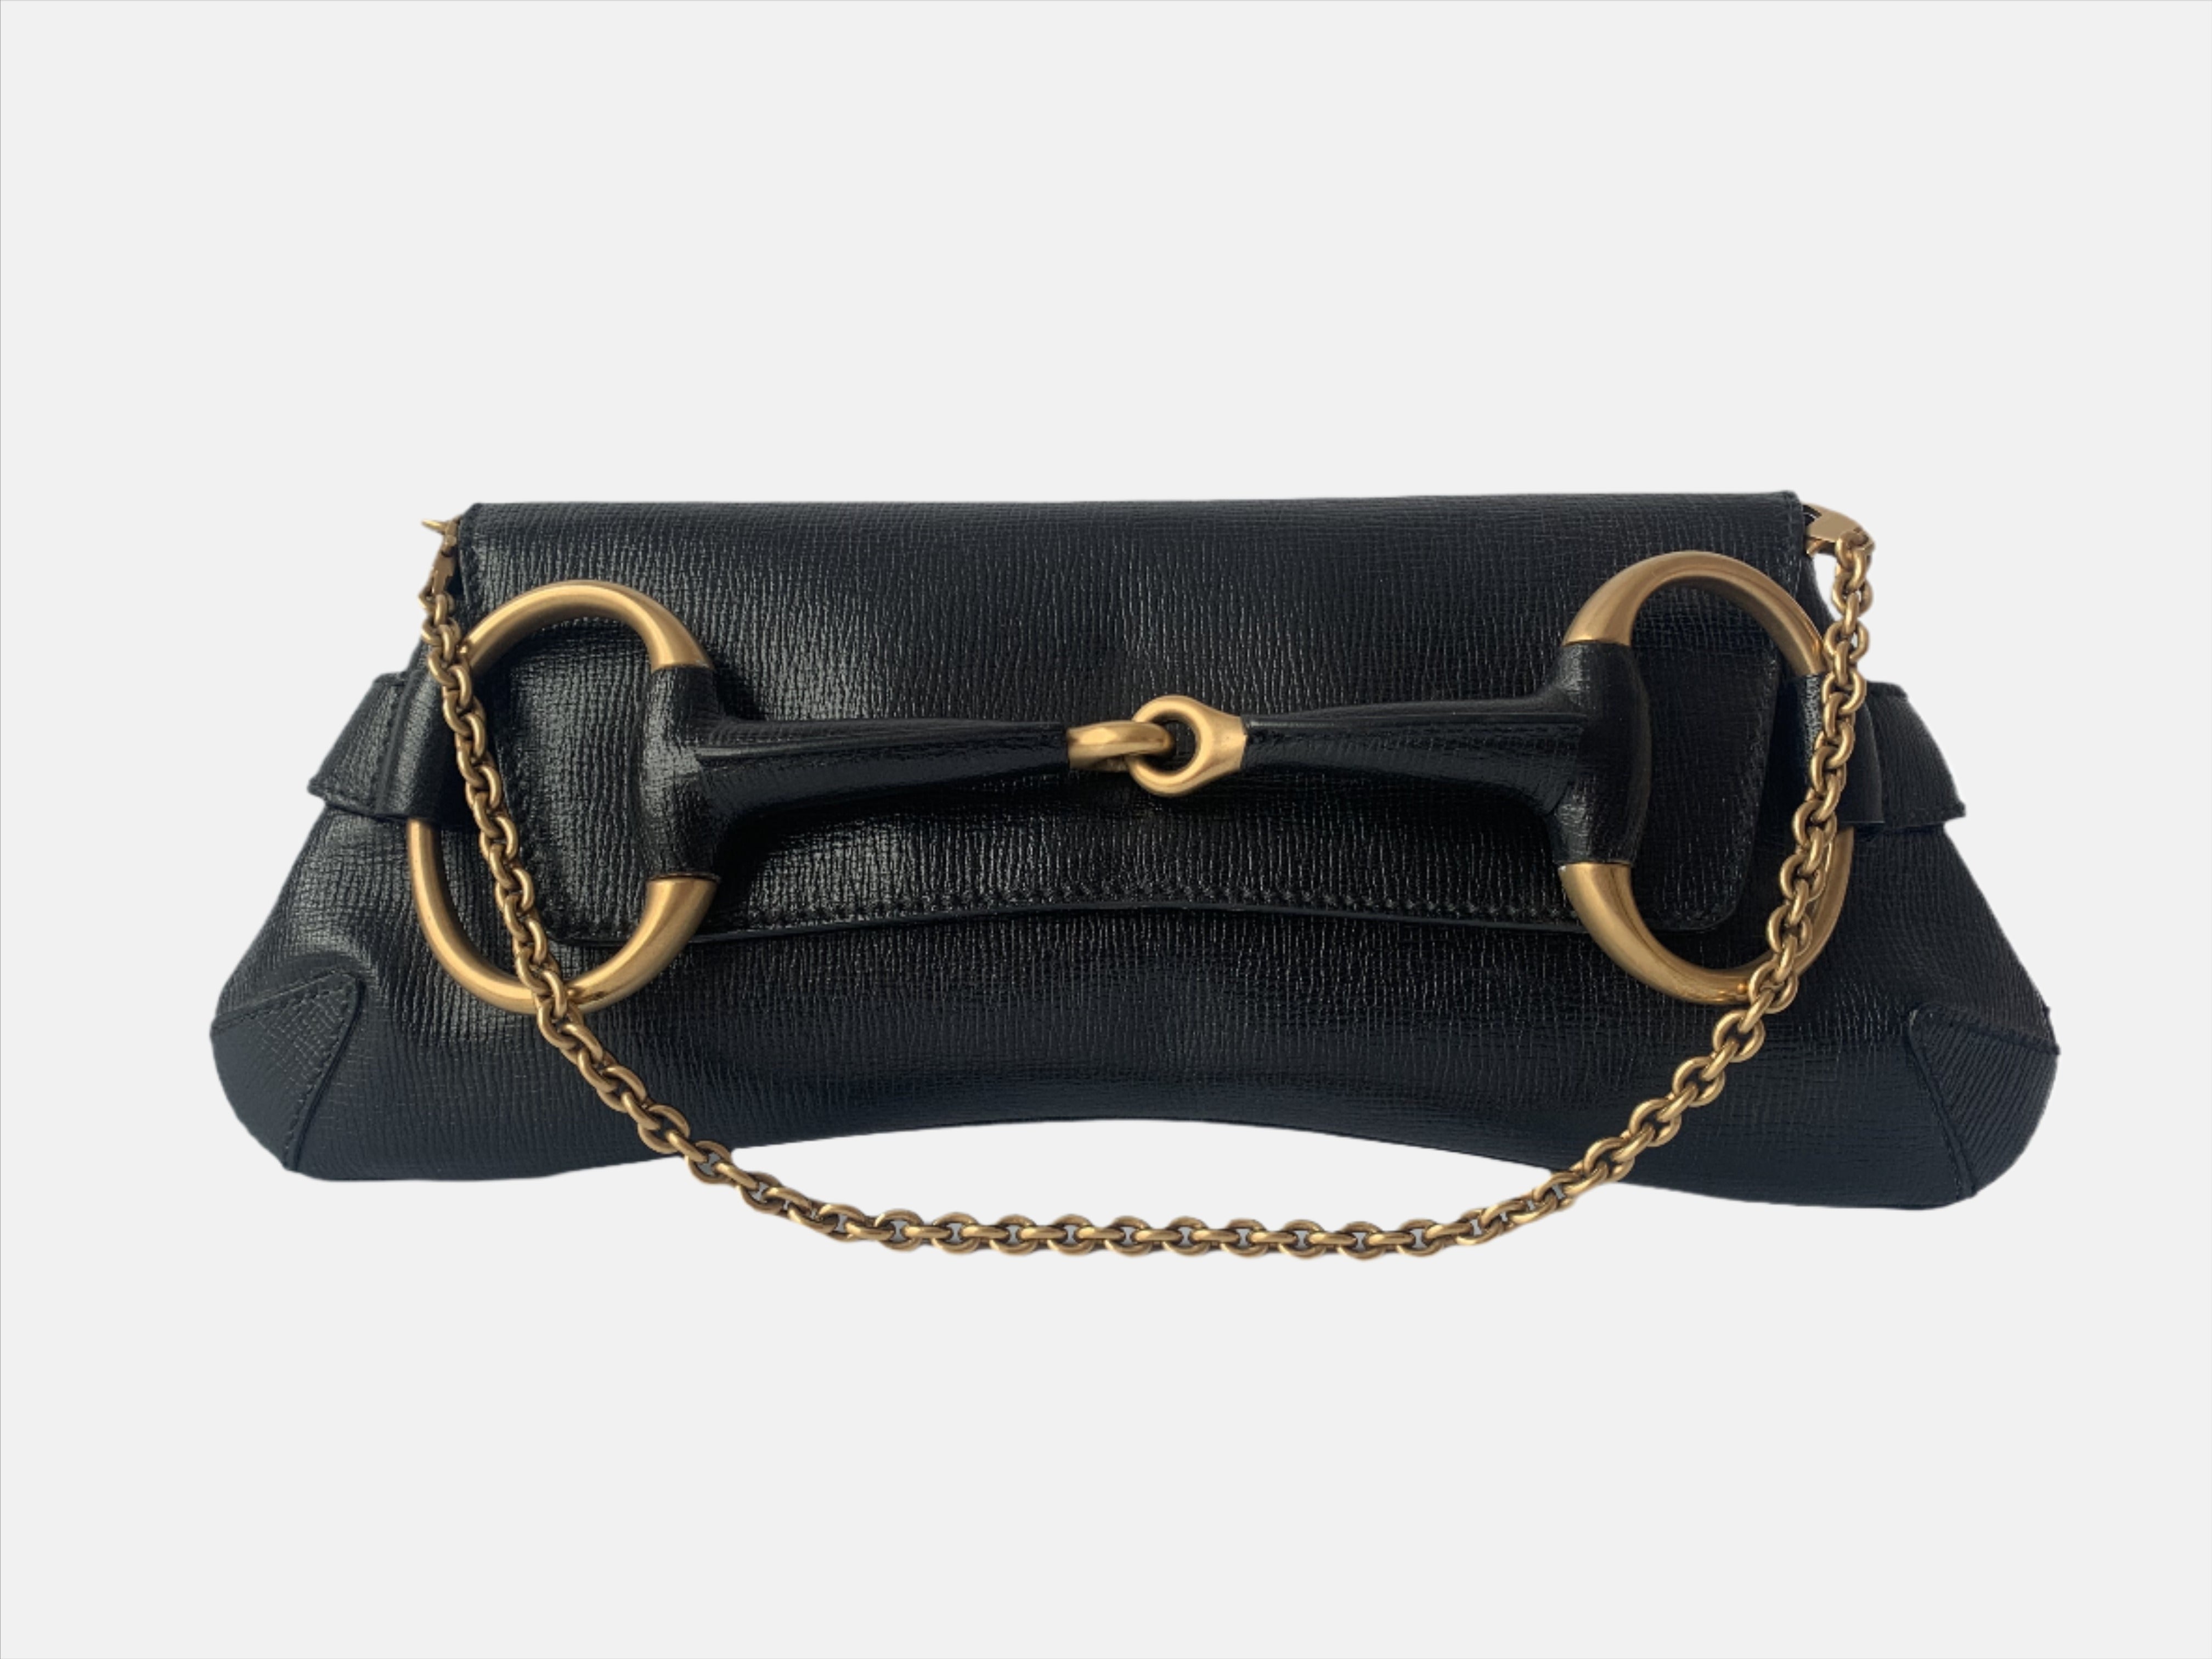 Sold Gucci Horsebit 1955 Chain Shoulder bag Large Black Leather